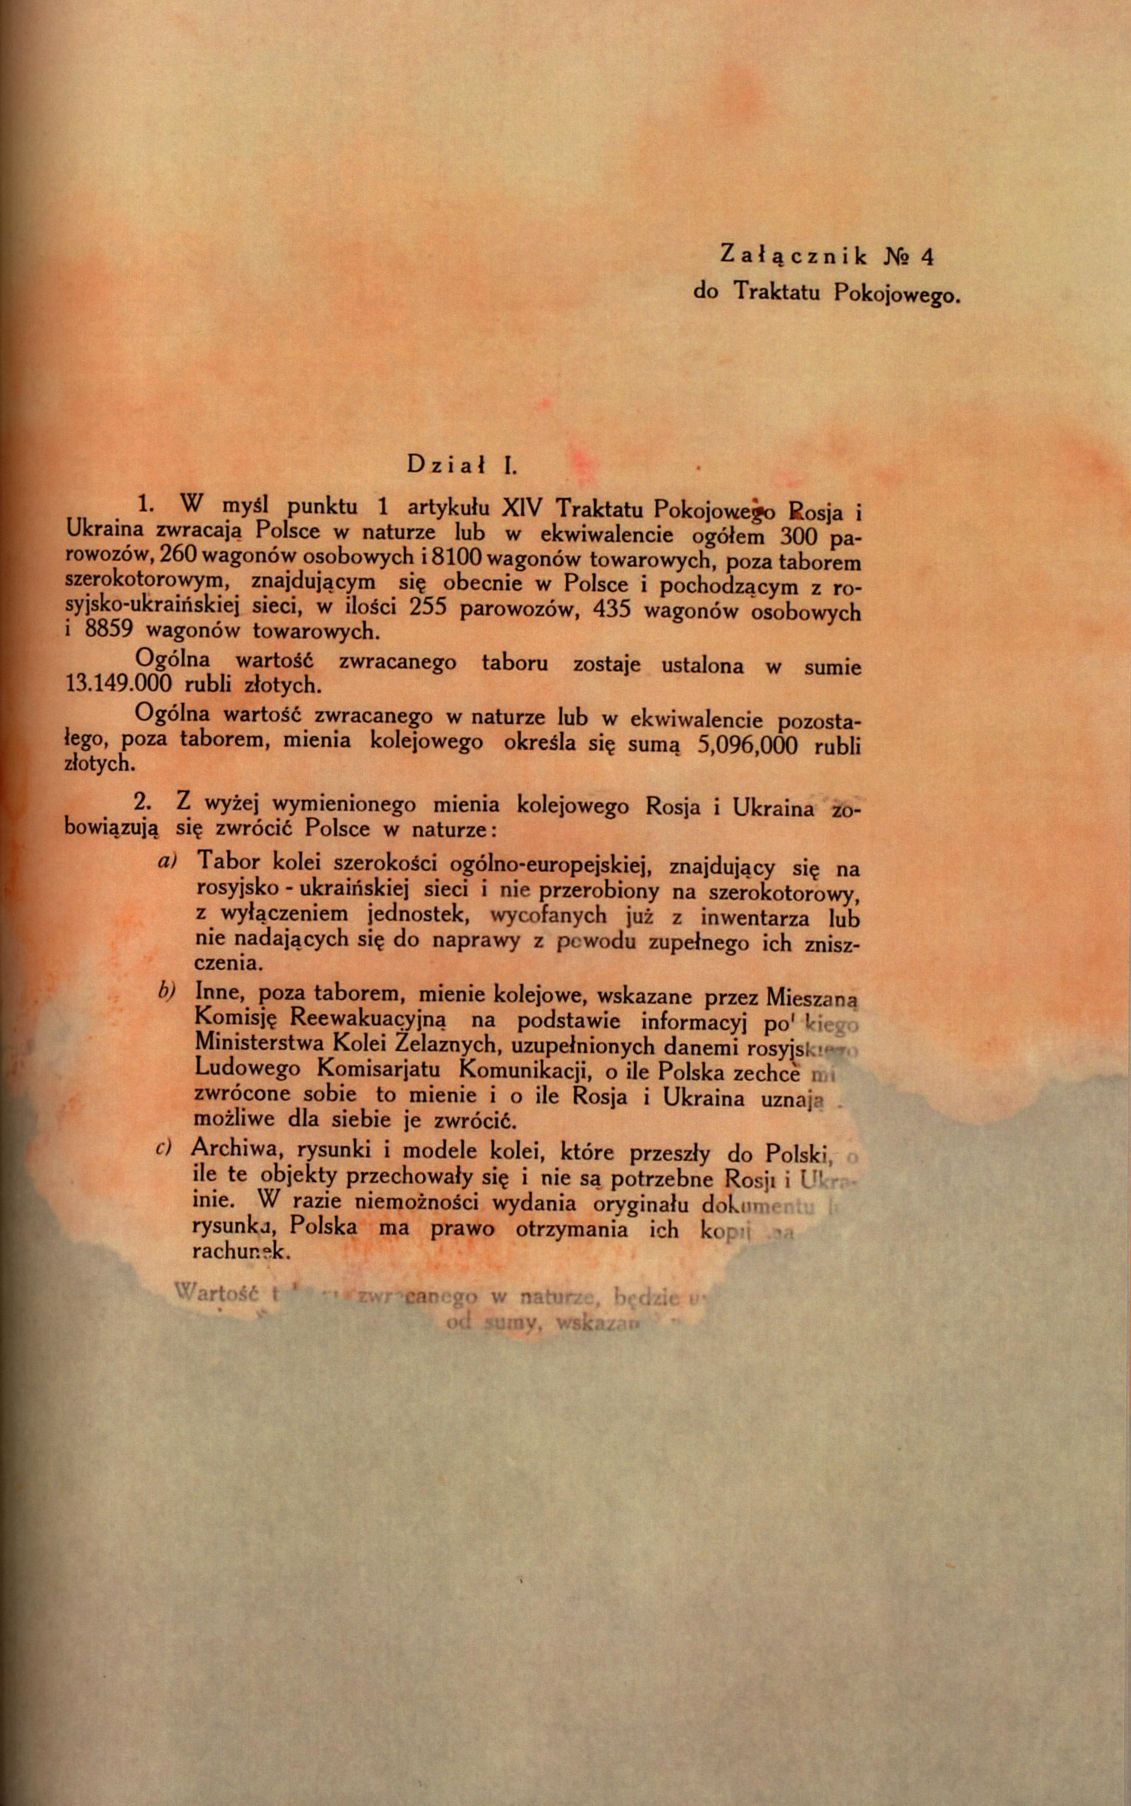 Traktat Pokoju między Polską a Rosją i Ukrainą podpisany w Rydze dnia 18 marca 1921 roku, s. 28, MSZ, sygn. 6739.